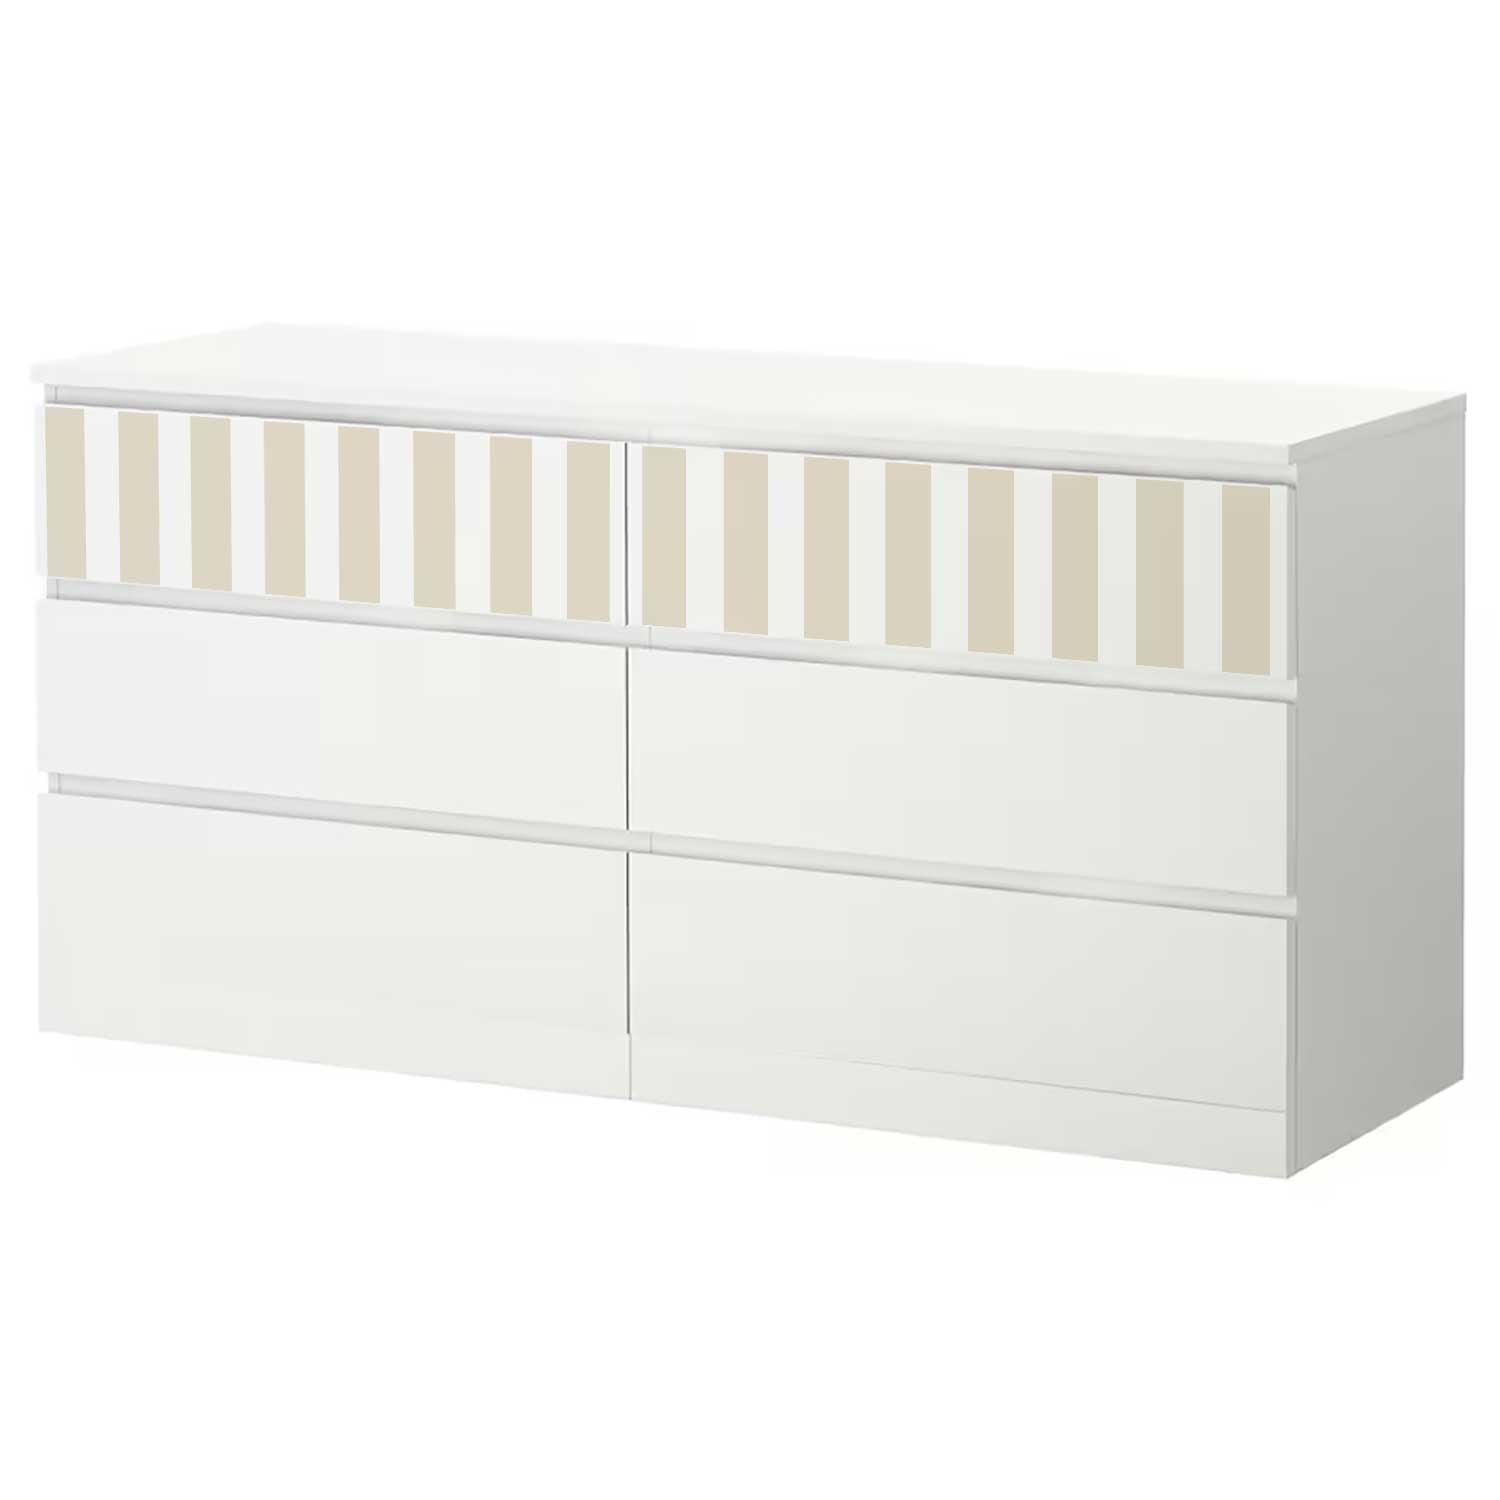 Möbelfolie für IKEA MALM Kommode 6-Schubladen 160x78 cm 'Streifen'